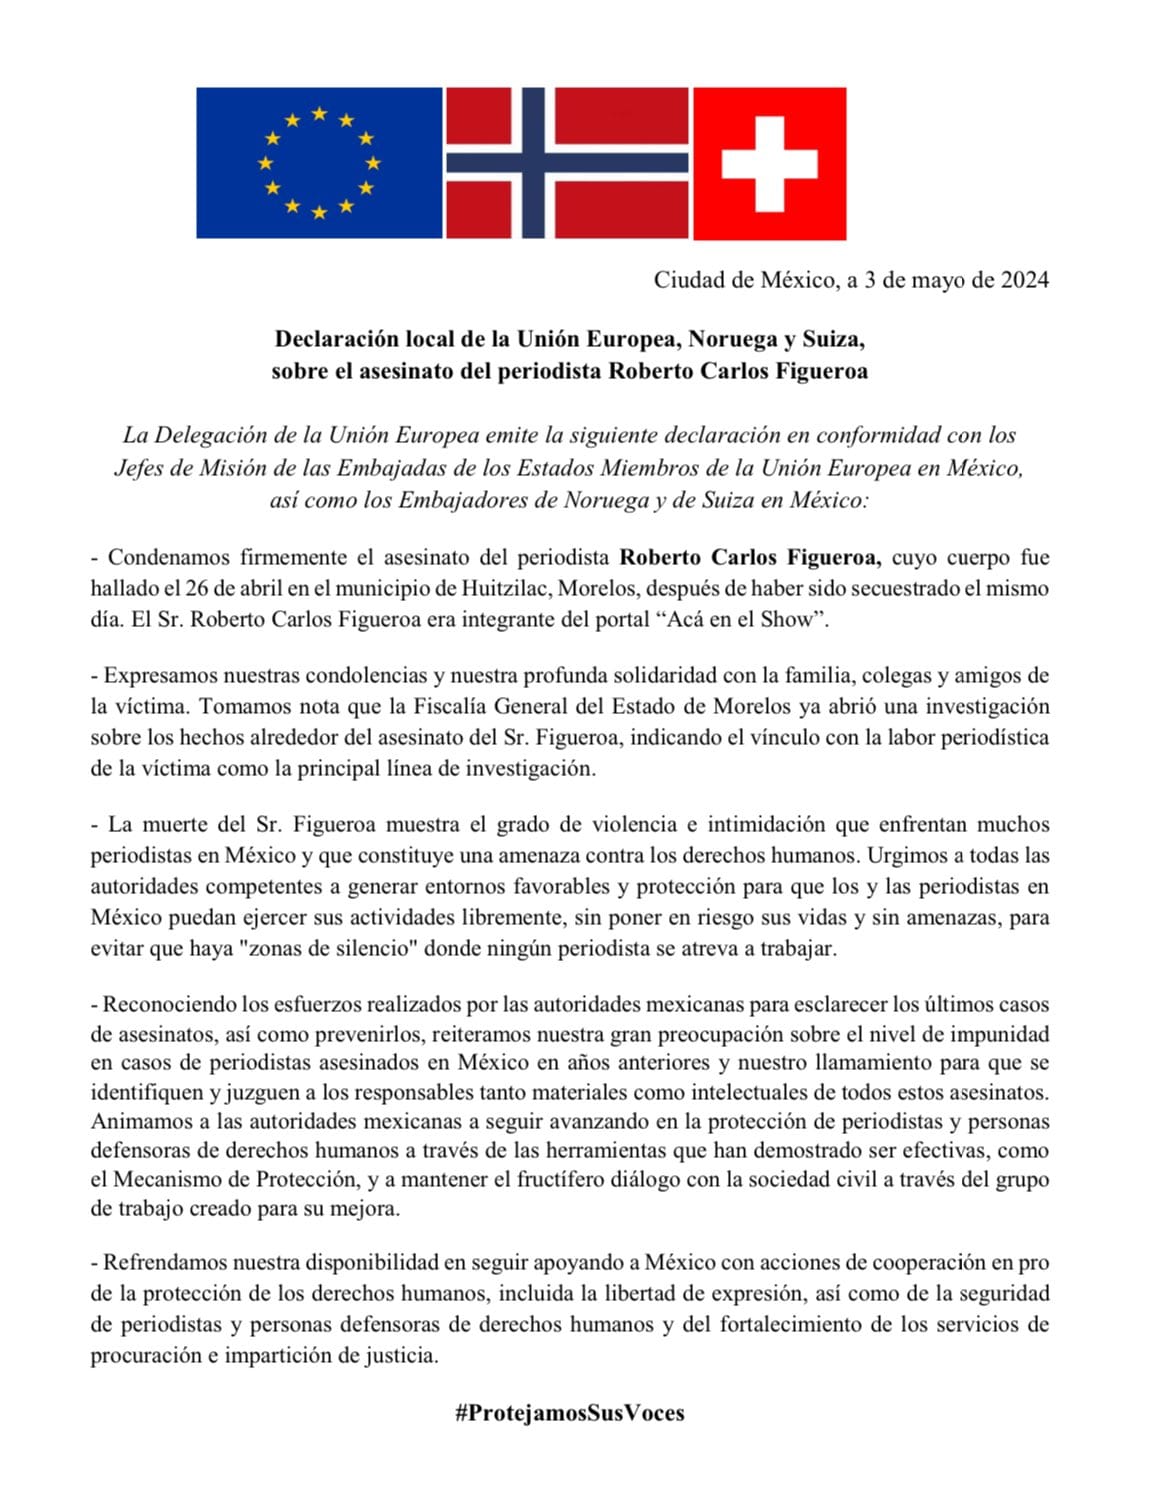 Comunicado de la Delegación de la Unión Europea por el asesinato del periodista Roberto Carlos Figueroa.